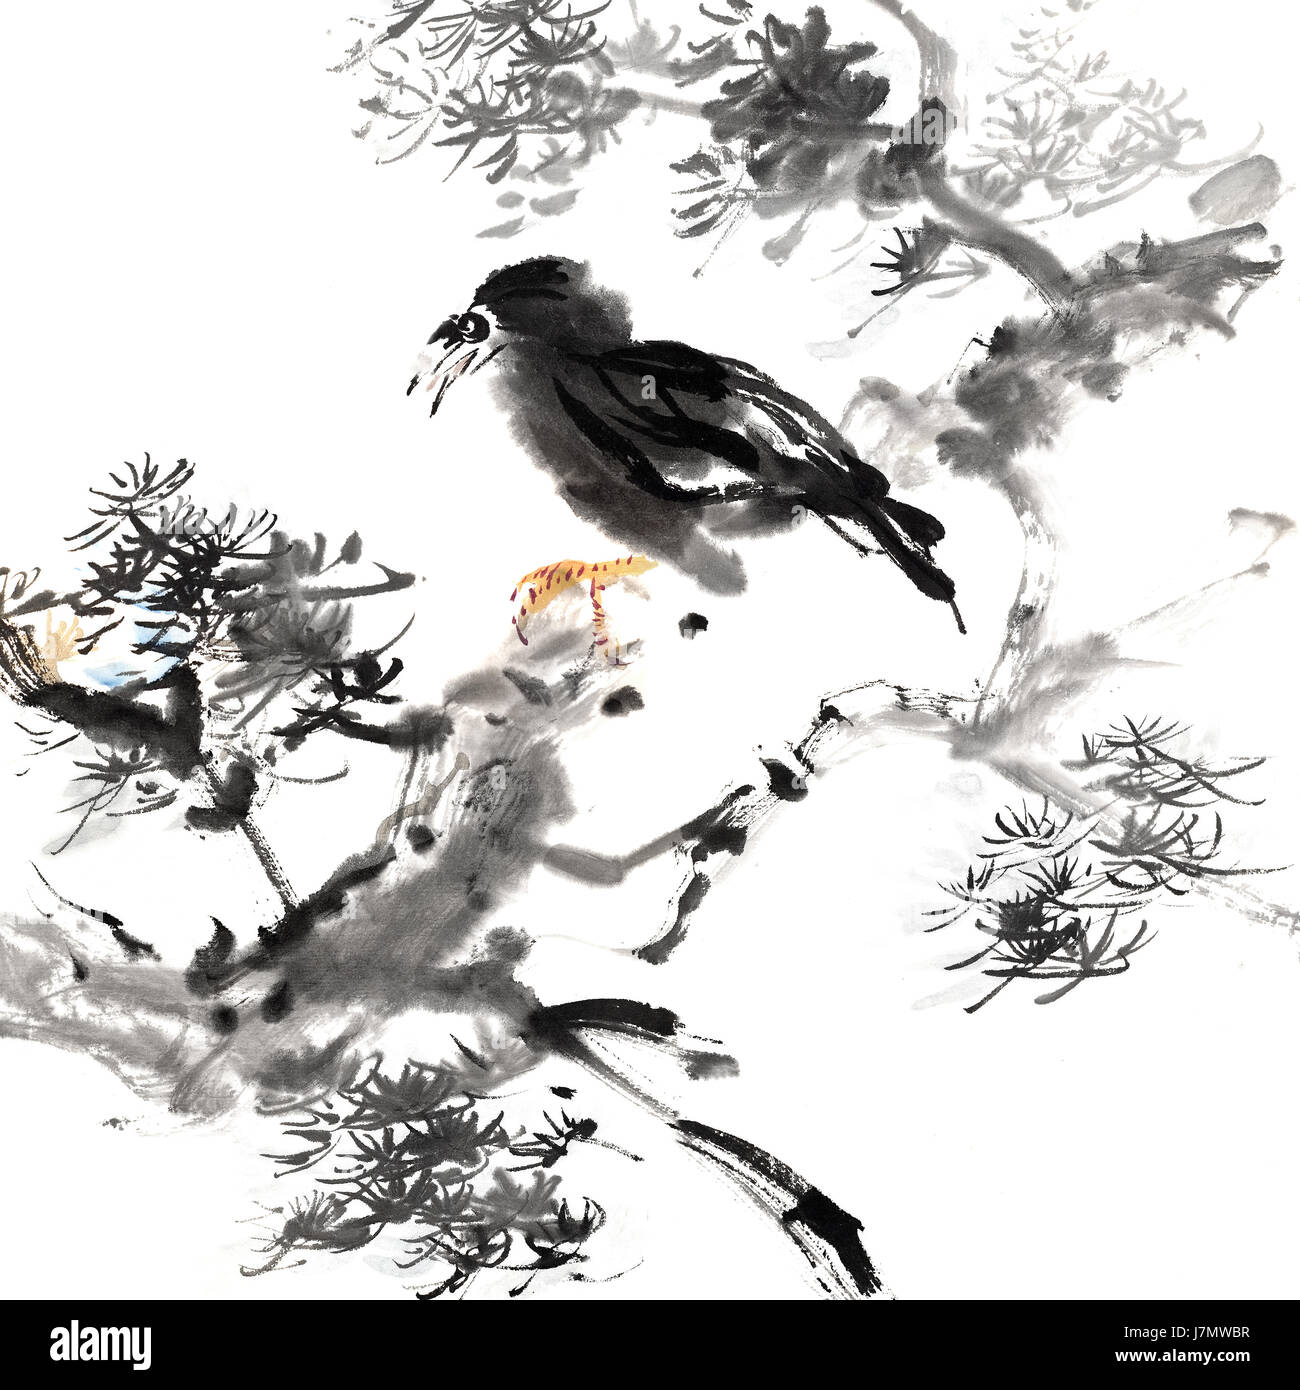 La culture unique de la peinture de paysage chinoise traditionnelle d'oiseaux campagne paysage Banque D'Images